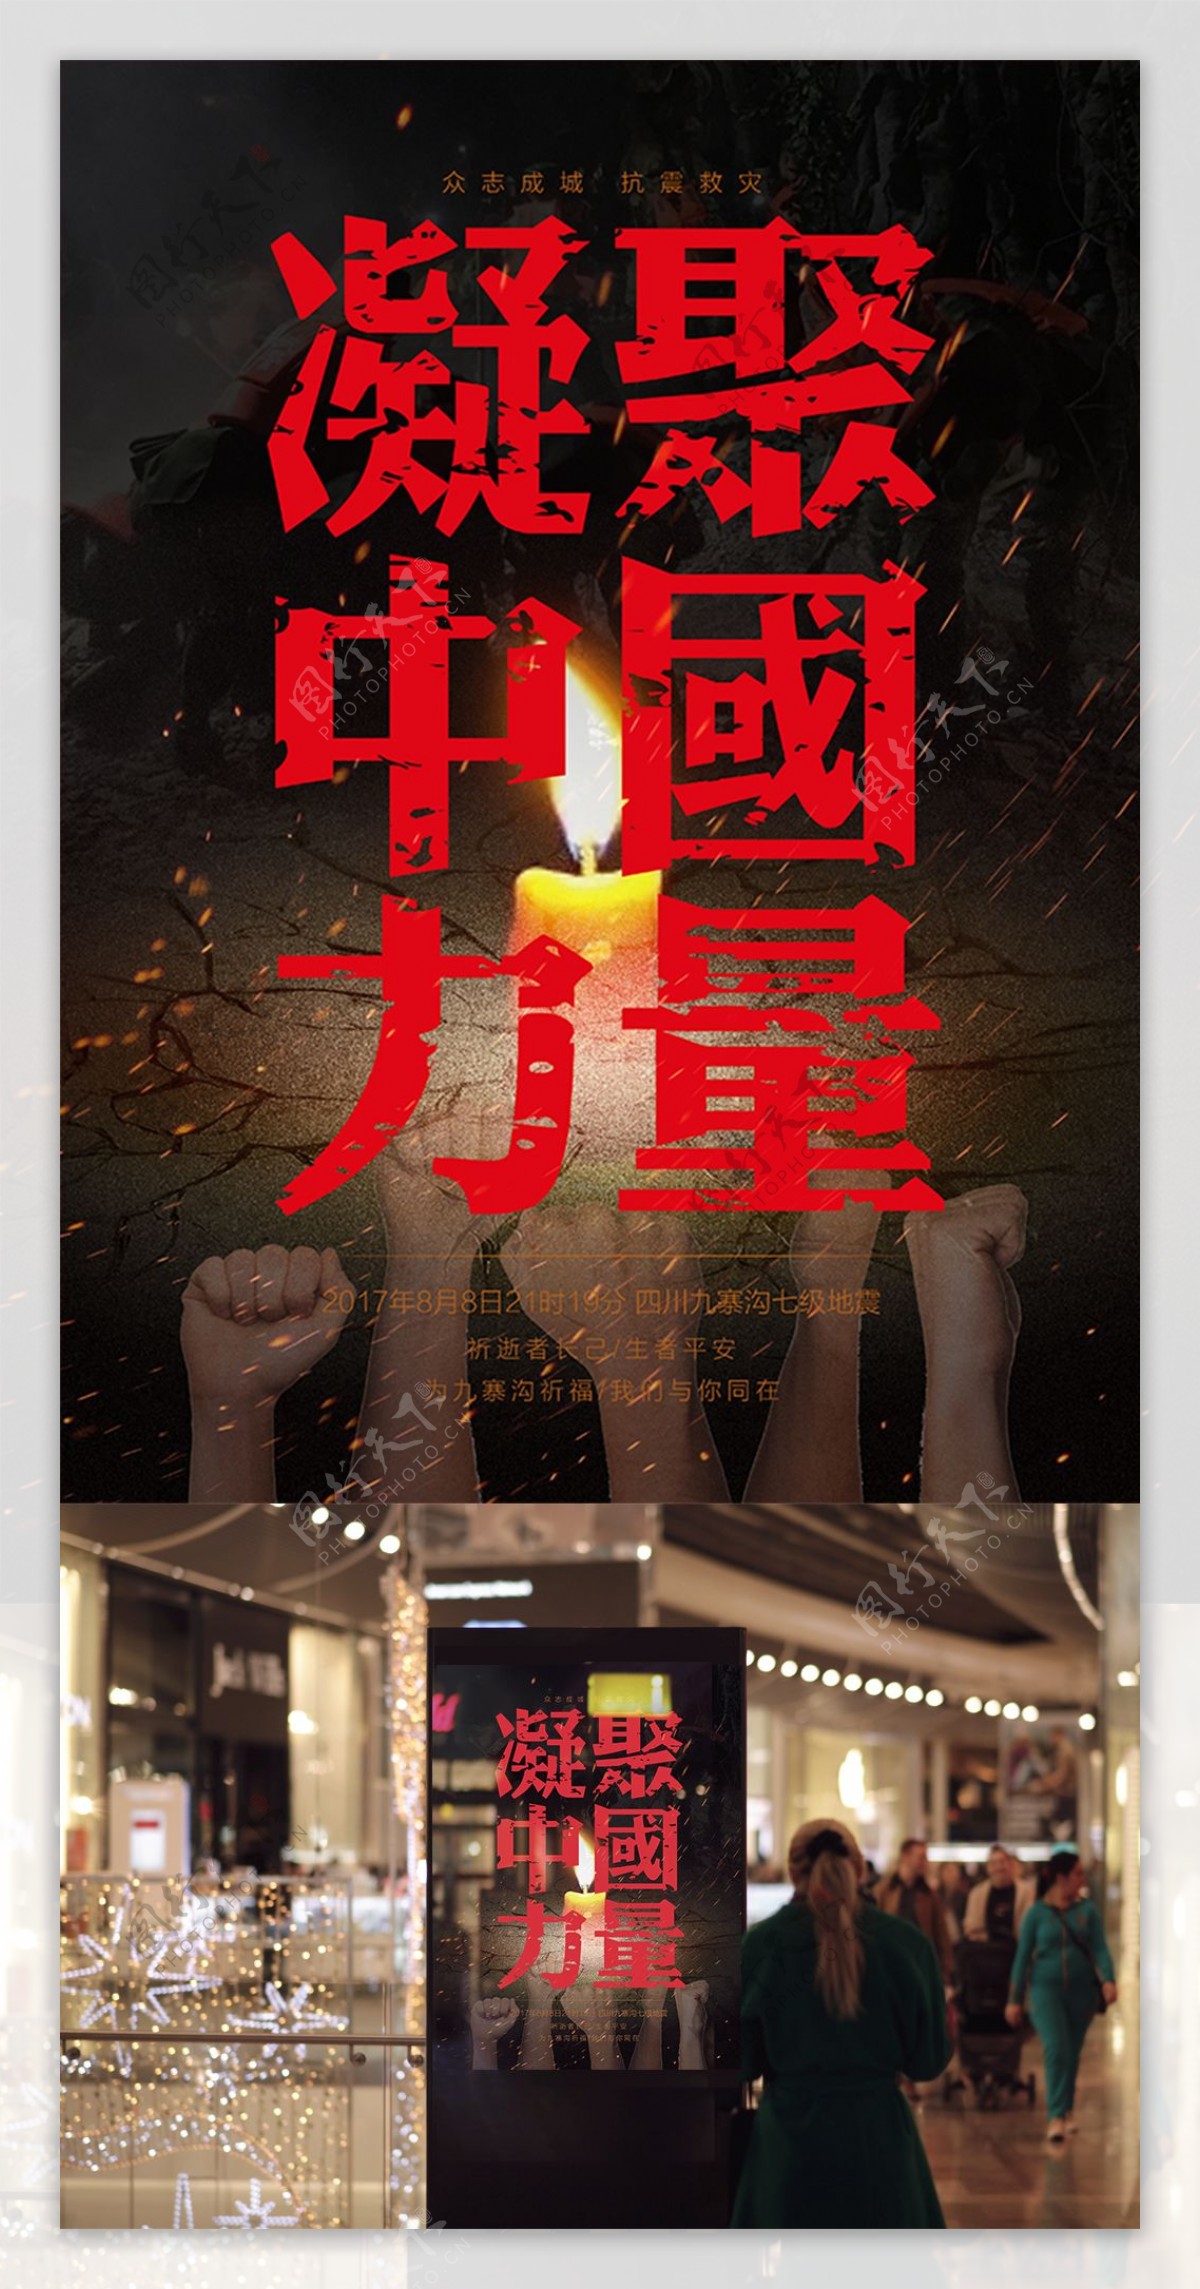 凝聚中国力量抗震救灾公益宣传海报地震祈福图片祈愿图片祈祷图片九寨加油创意公益海报